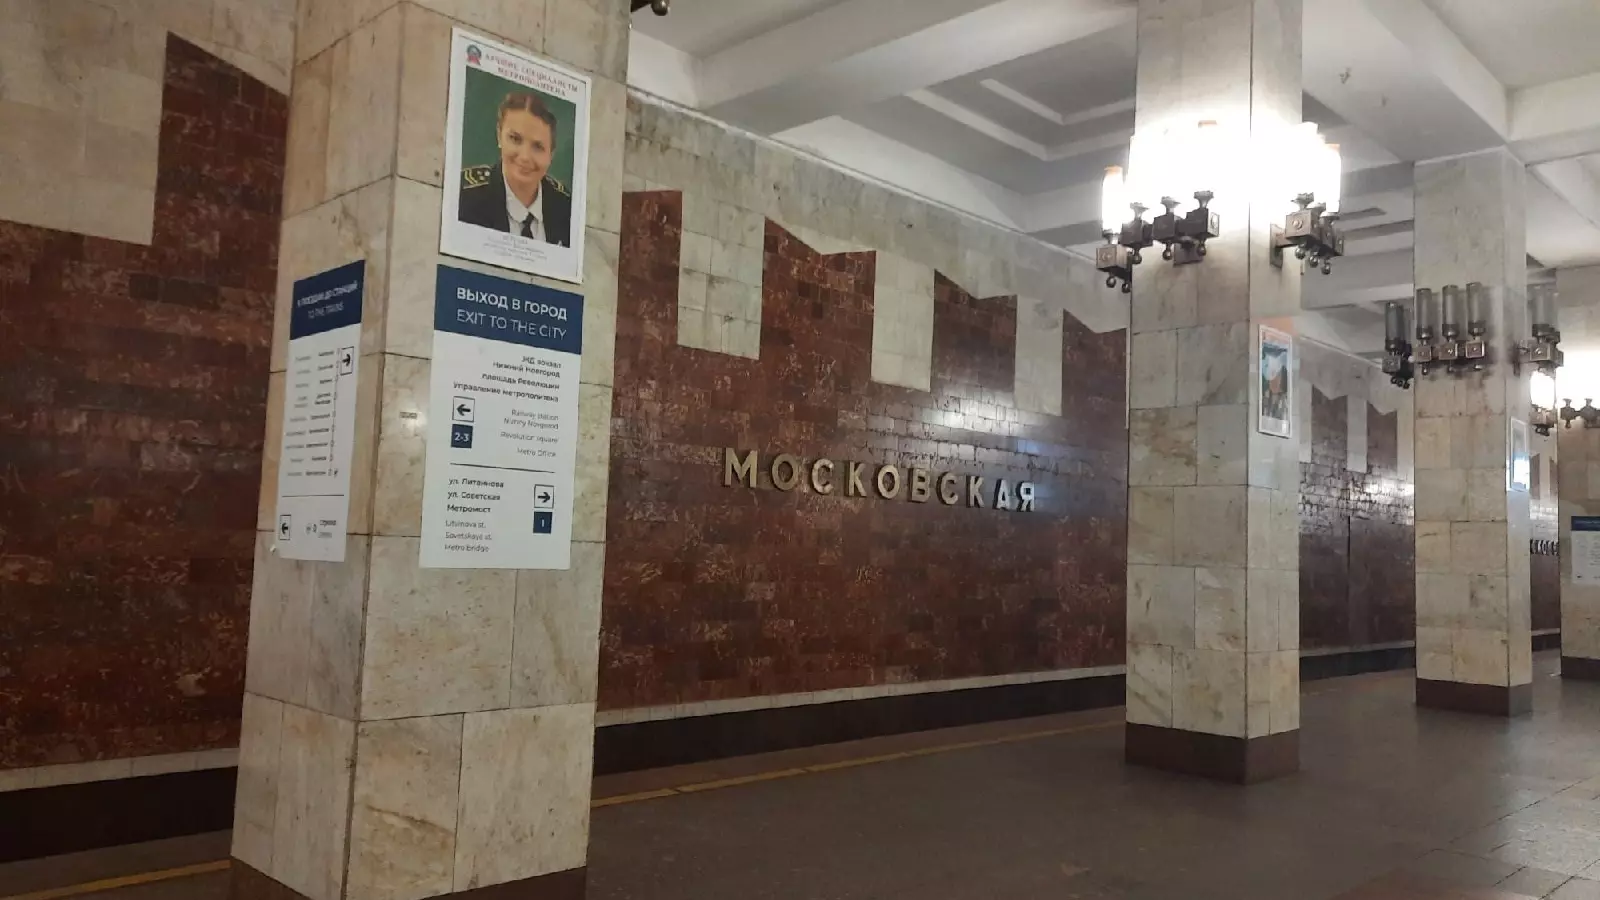 Нижегородца пожаловалась на рекламный щит в метро